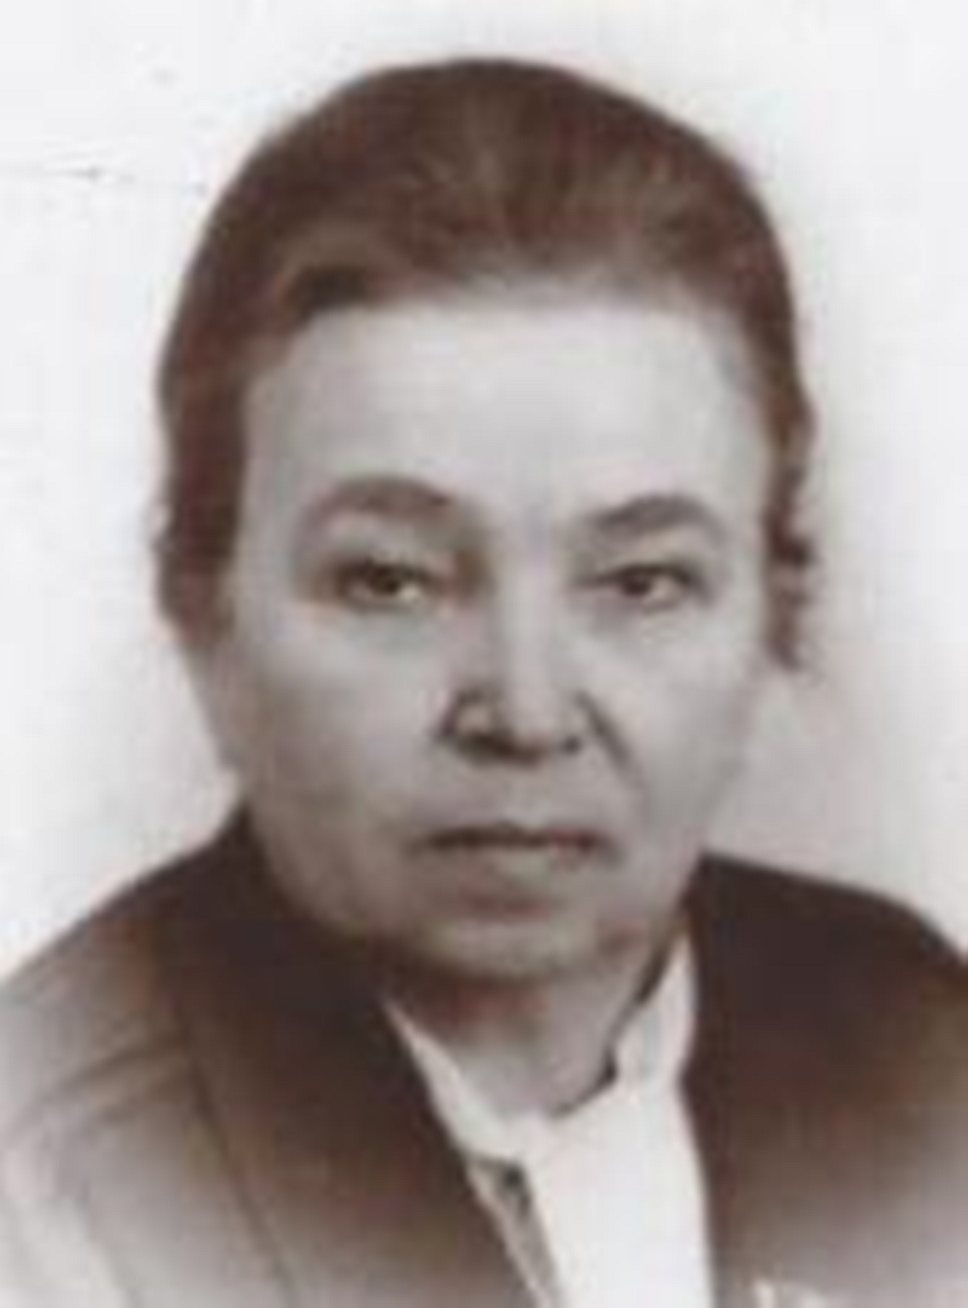 Сегодня исполняется 100 лет экс-министру соцобеспечения, экс-зампреду Совета министров РСФСР Лидии Лыковой